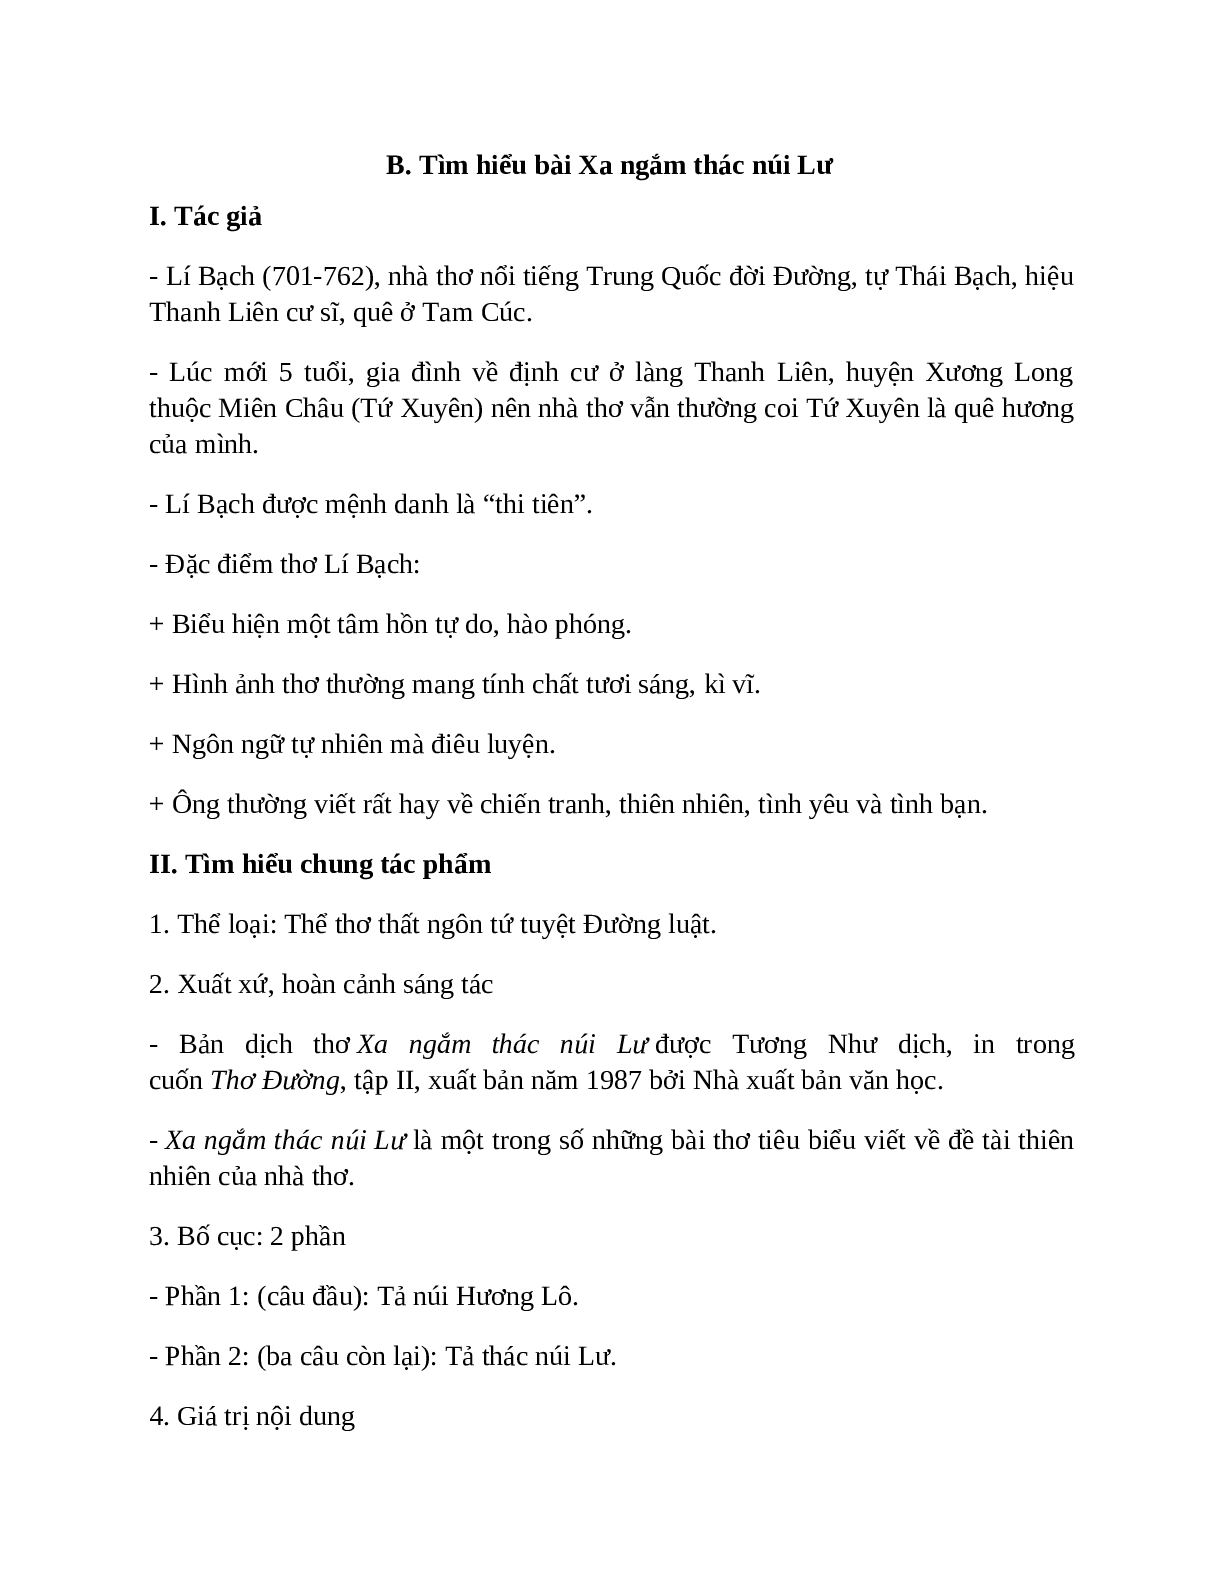 Sơ đồ tư duy bài Xa ngắm thác núi Lư dễ nhớ, ngắn nhất - Ngữ văn lớp 7 (trang 2)